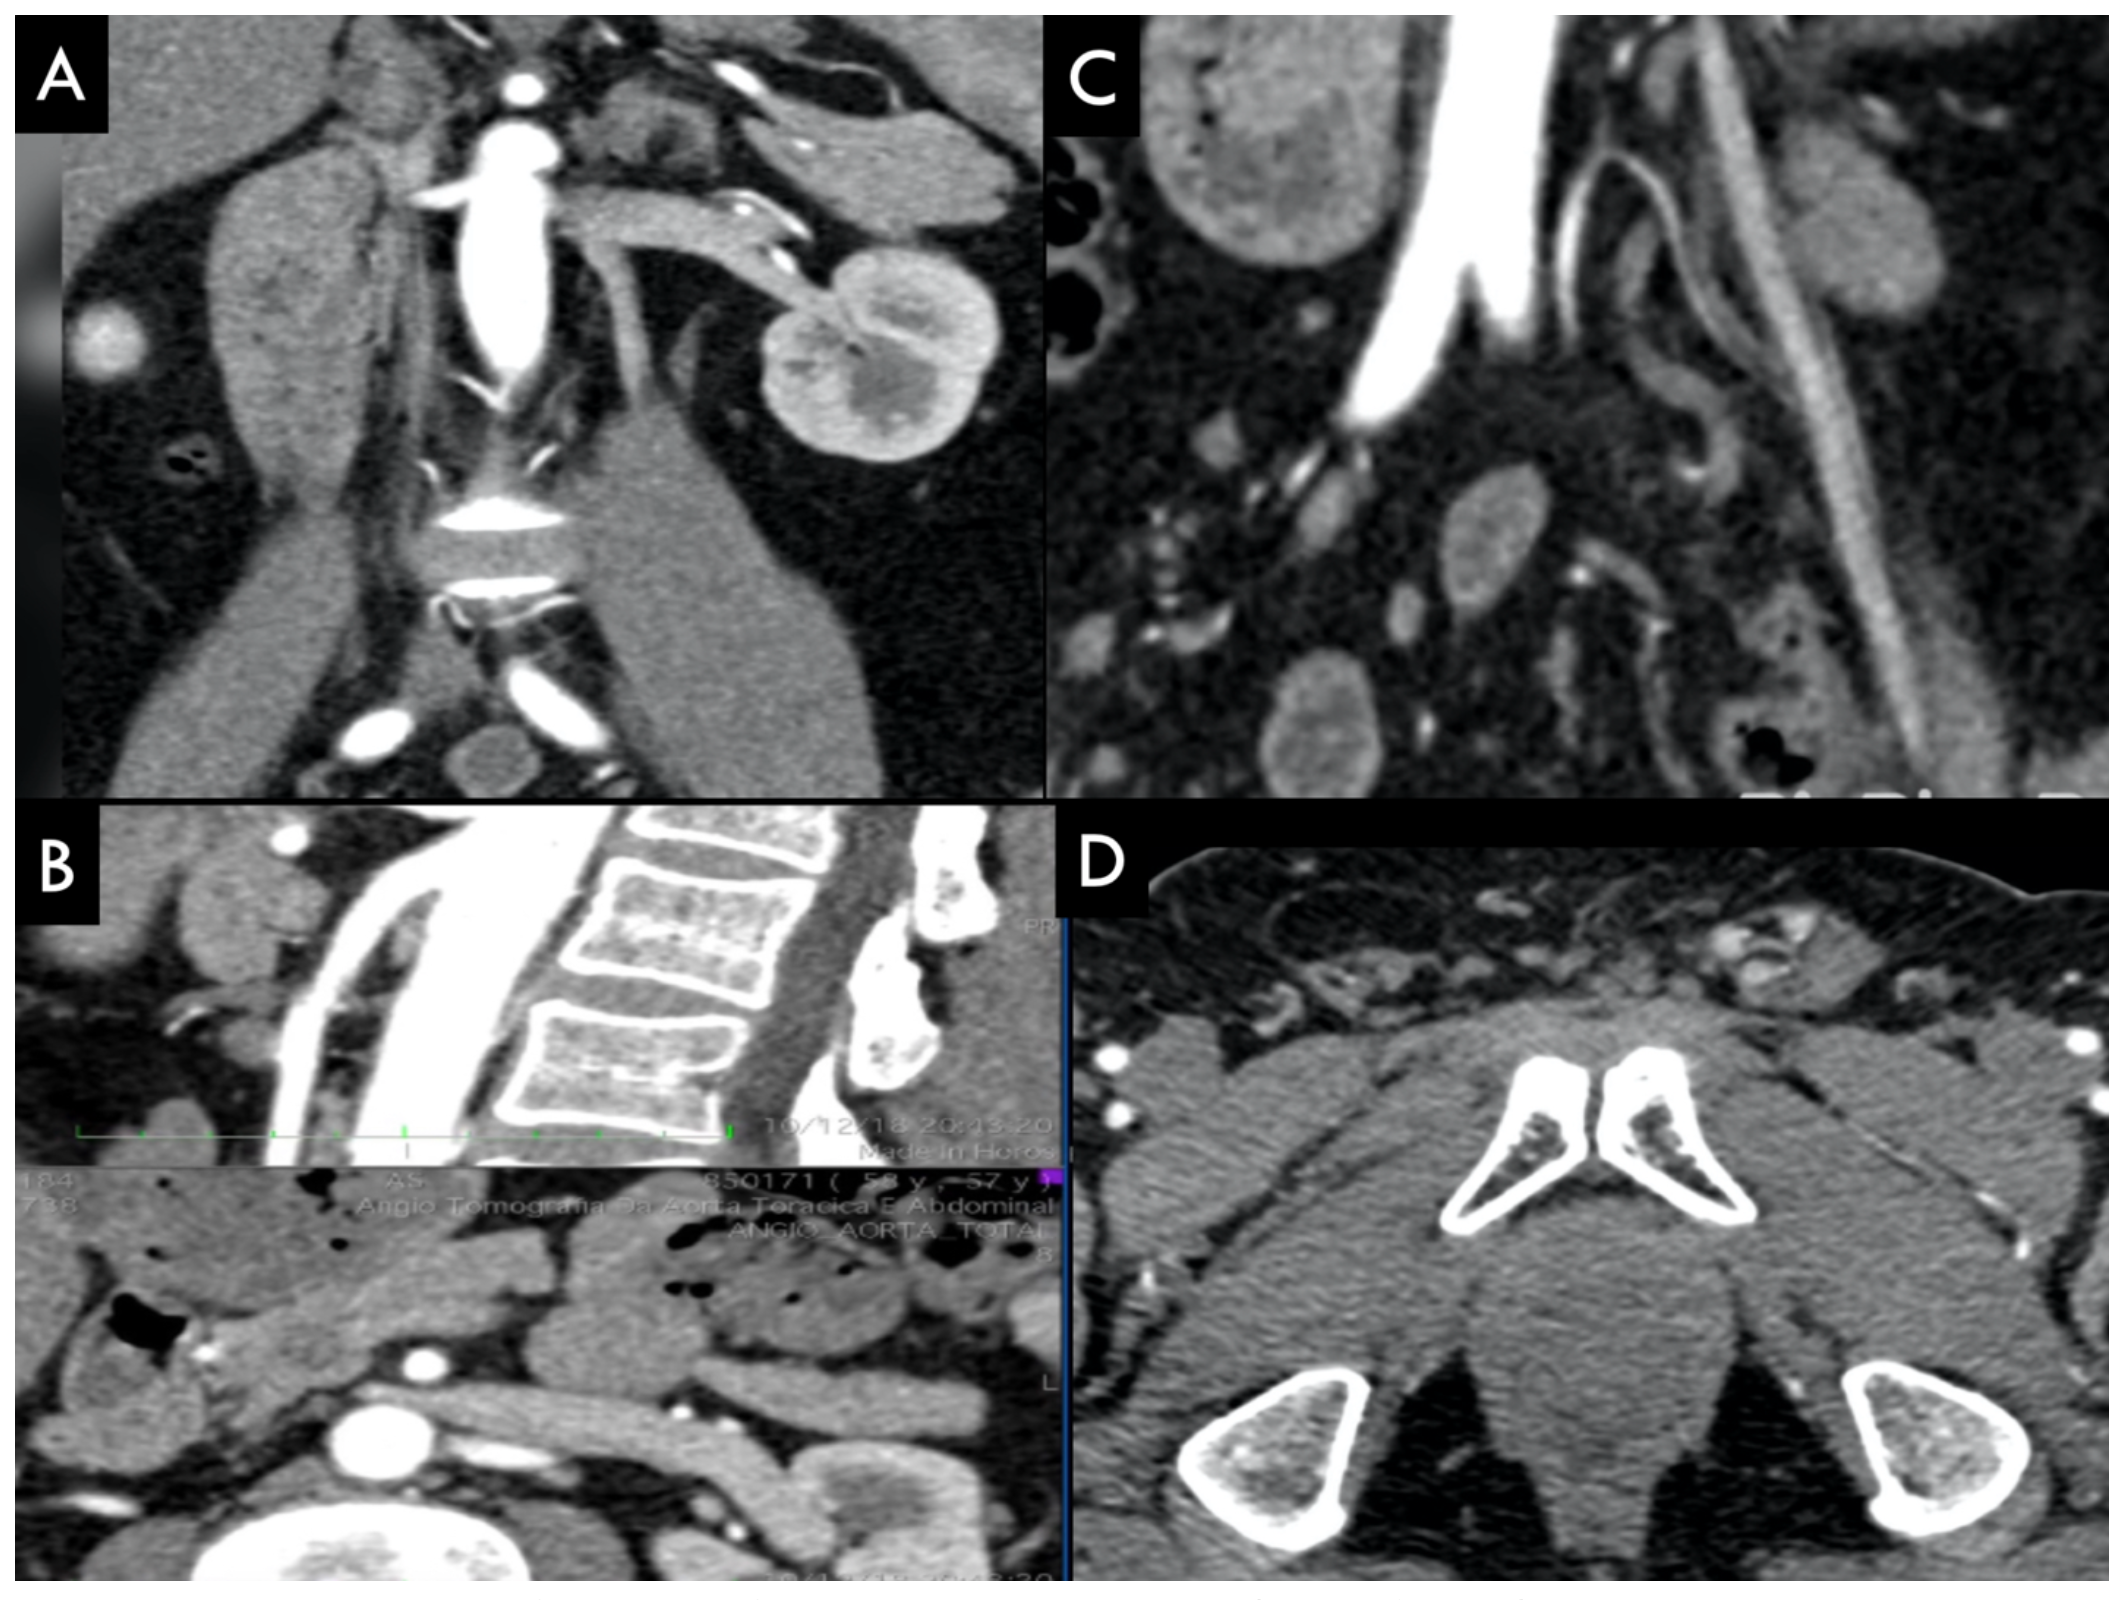 Figura 3 - Venografia por subtração digital demonstrando (A): refluxo em veia gonodal esquerda (VGE), no plexo venoso uterino (PVU), e na veia ilíaca comum esquerda (VICE); (B): Refluxo em veia gonadal, em plexo venoso ovariano (PVO) e plexo venoso trans-púbico (PVTP); (C): refluxo em veia espermática, plexo pampiniforme (PP) esquerdo. 